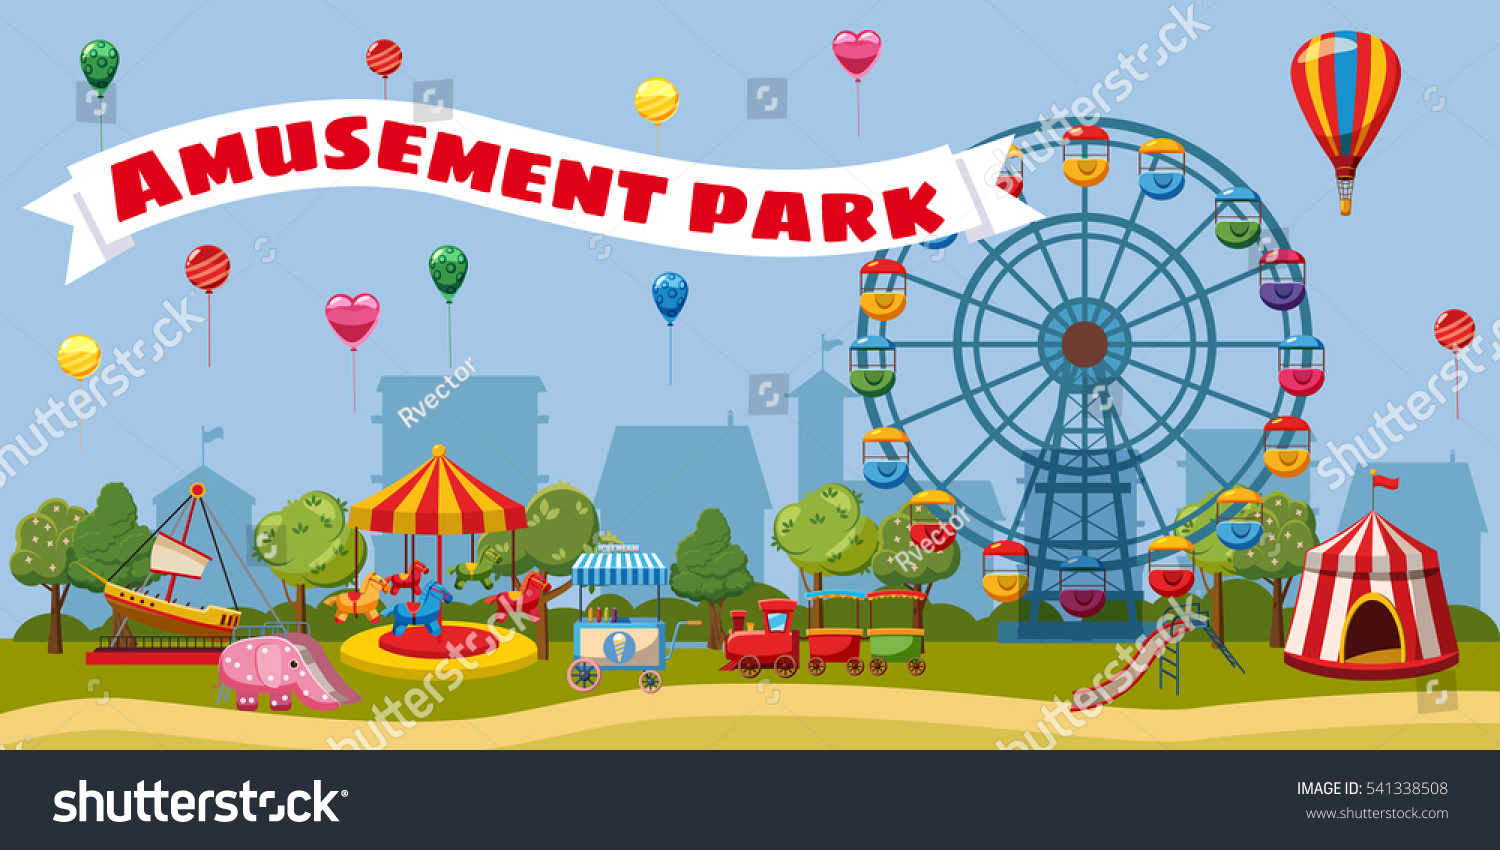 Amusement Park Landscape Concept Cartoon Illustration Stock Vector